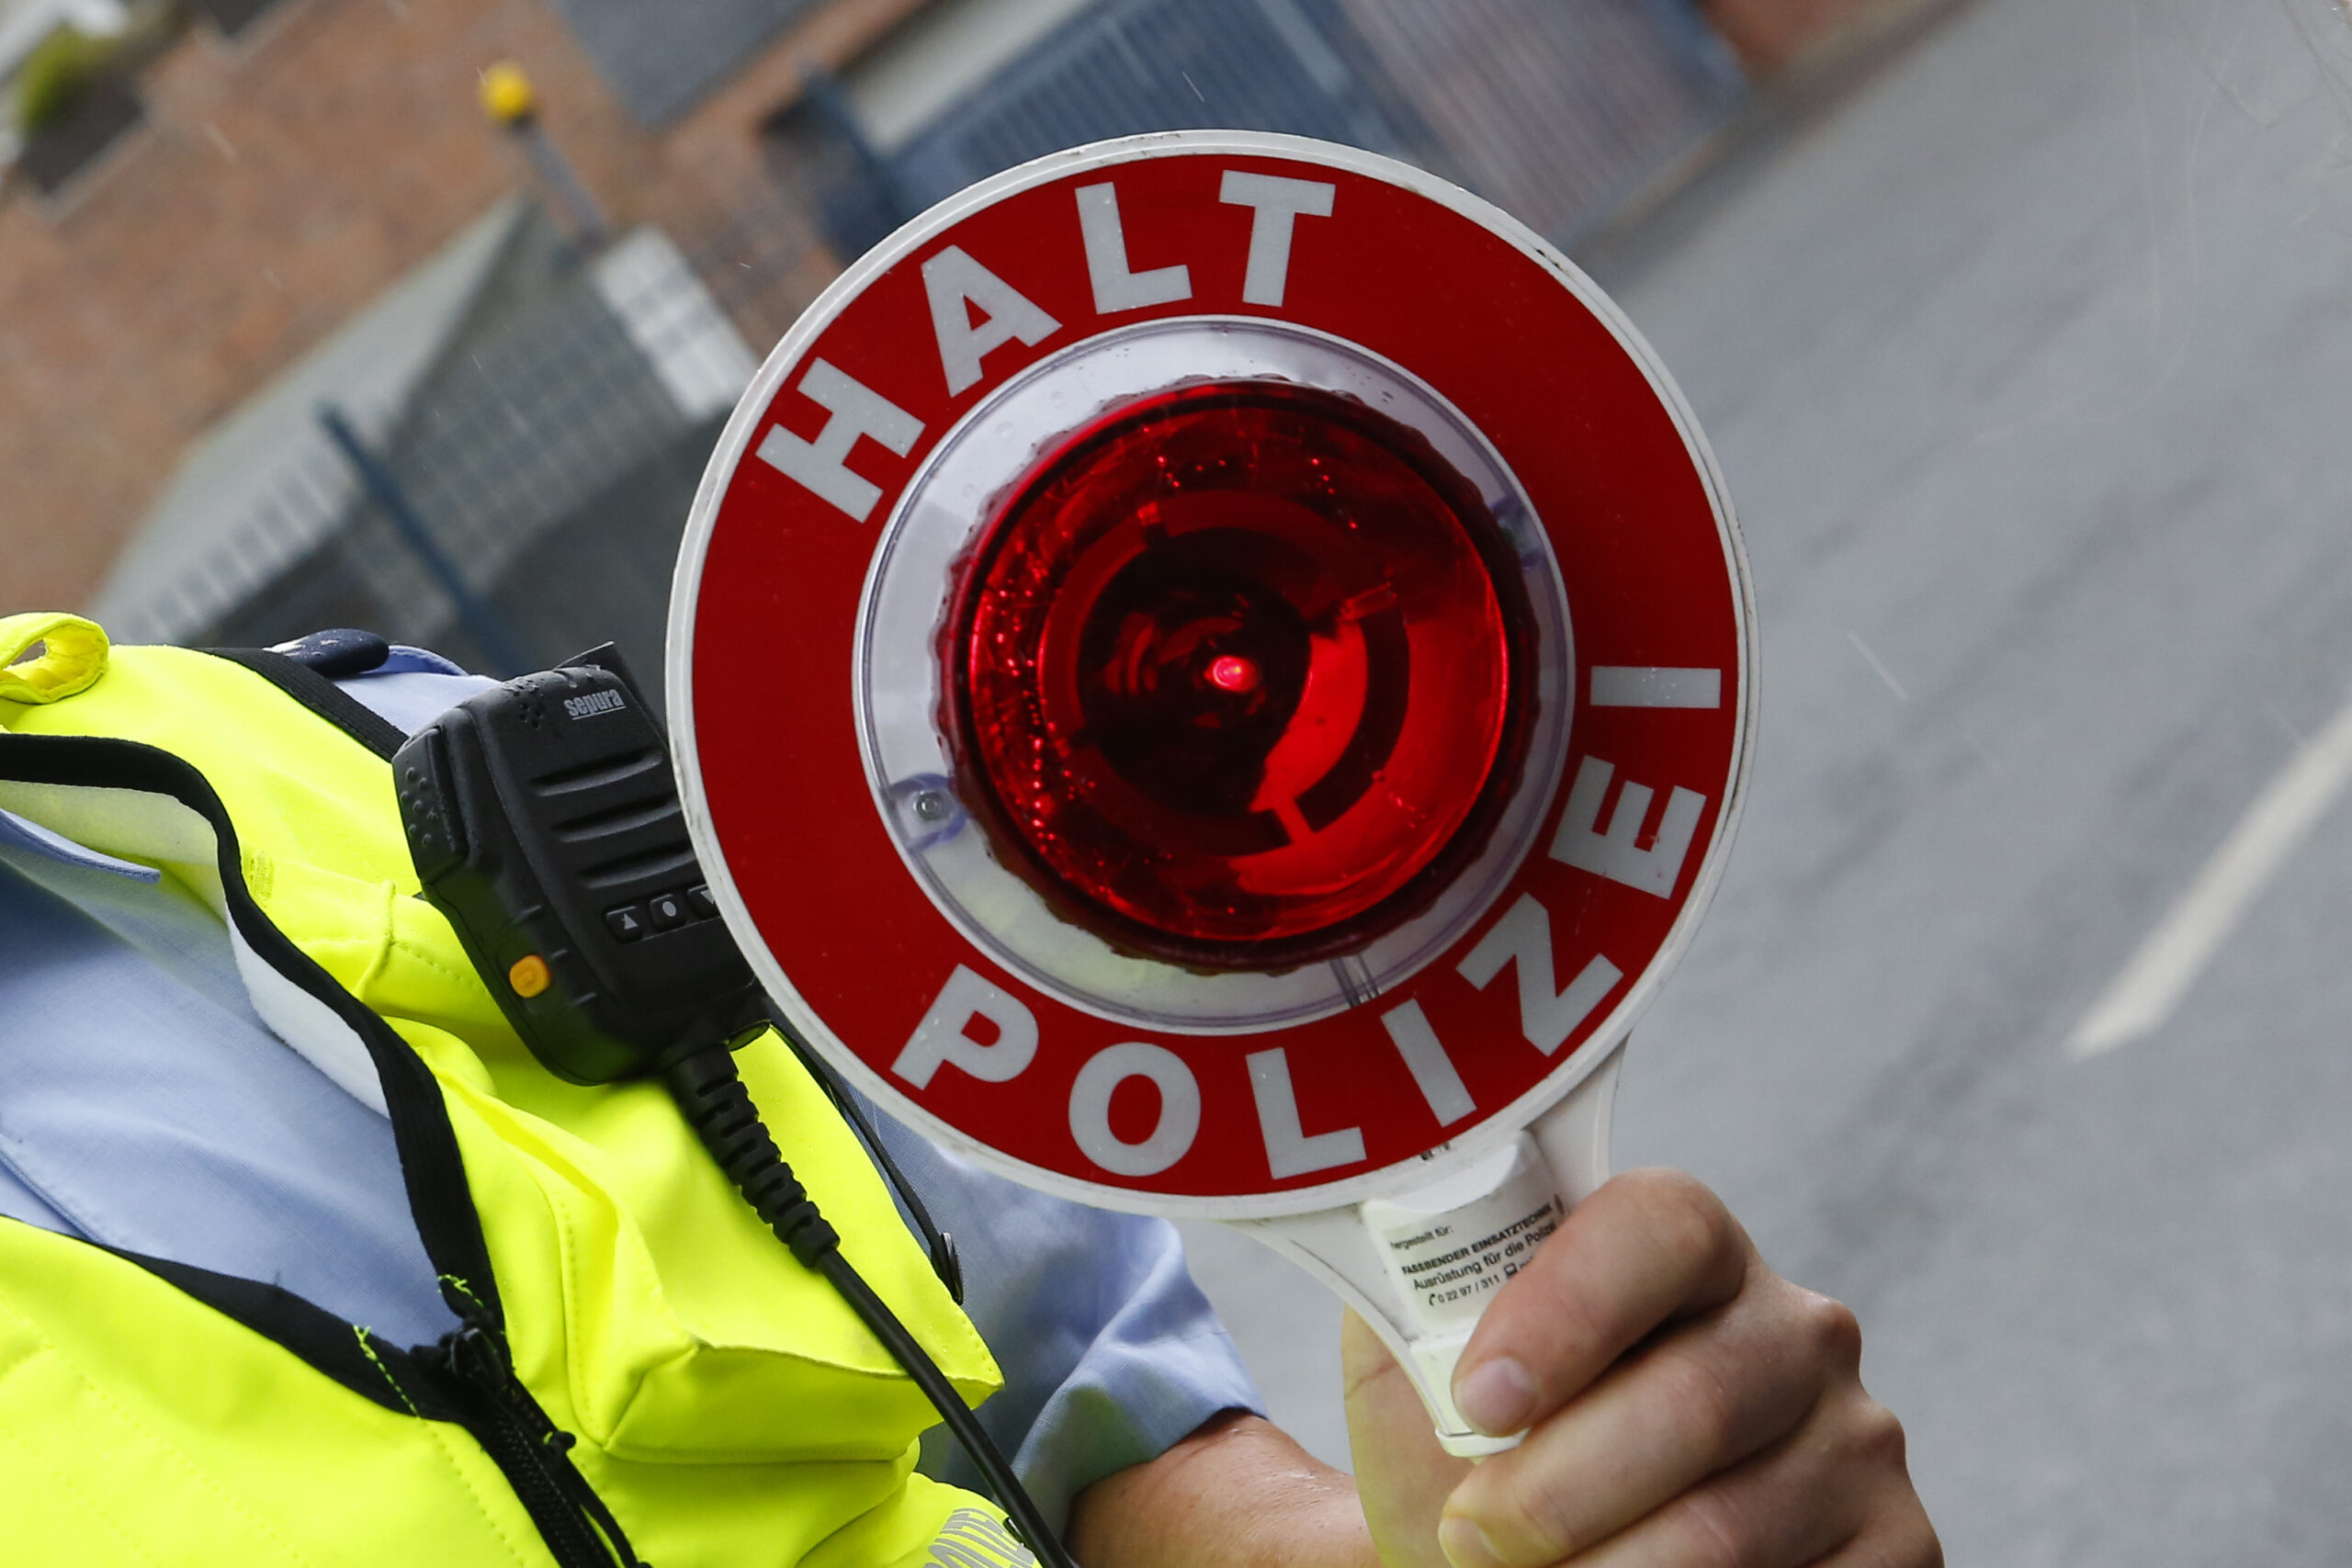 Gelsenkirchen: Aggressiver Autofahrer übernachtet im Polizeigewahrsam